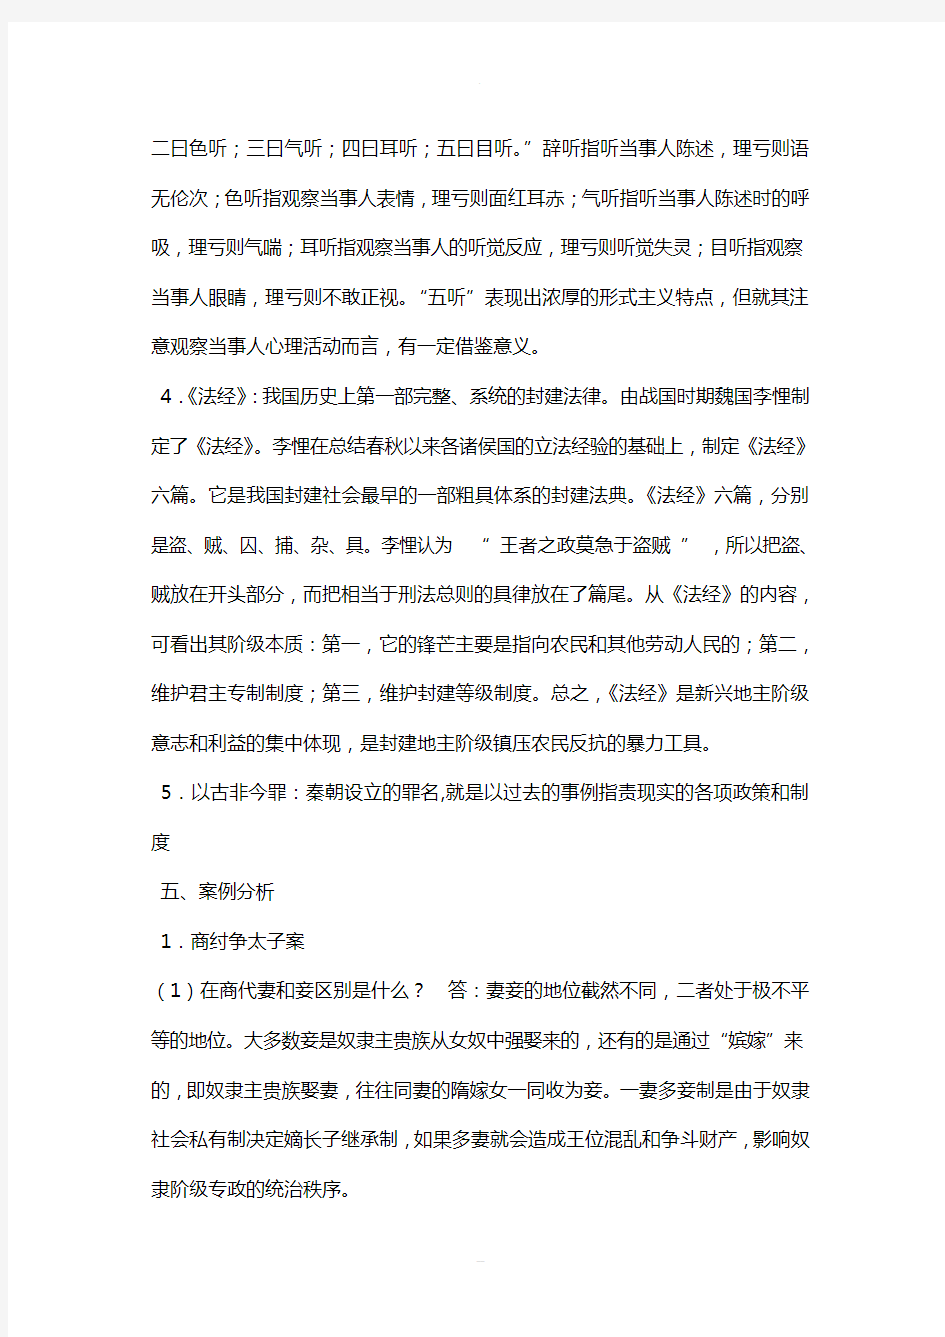 中国法制史形成性考核册作业答案(电大作业)